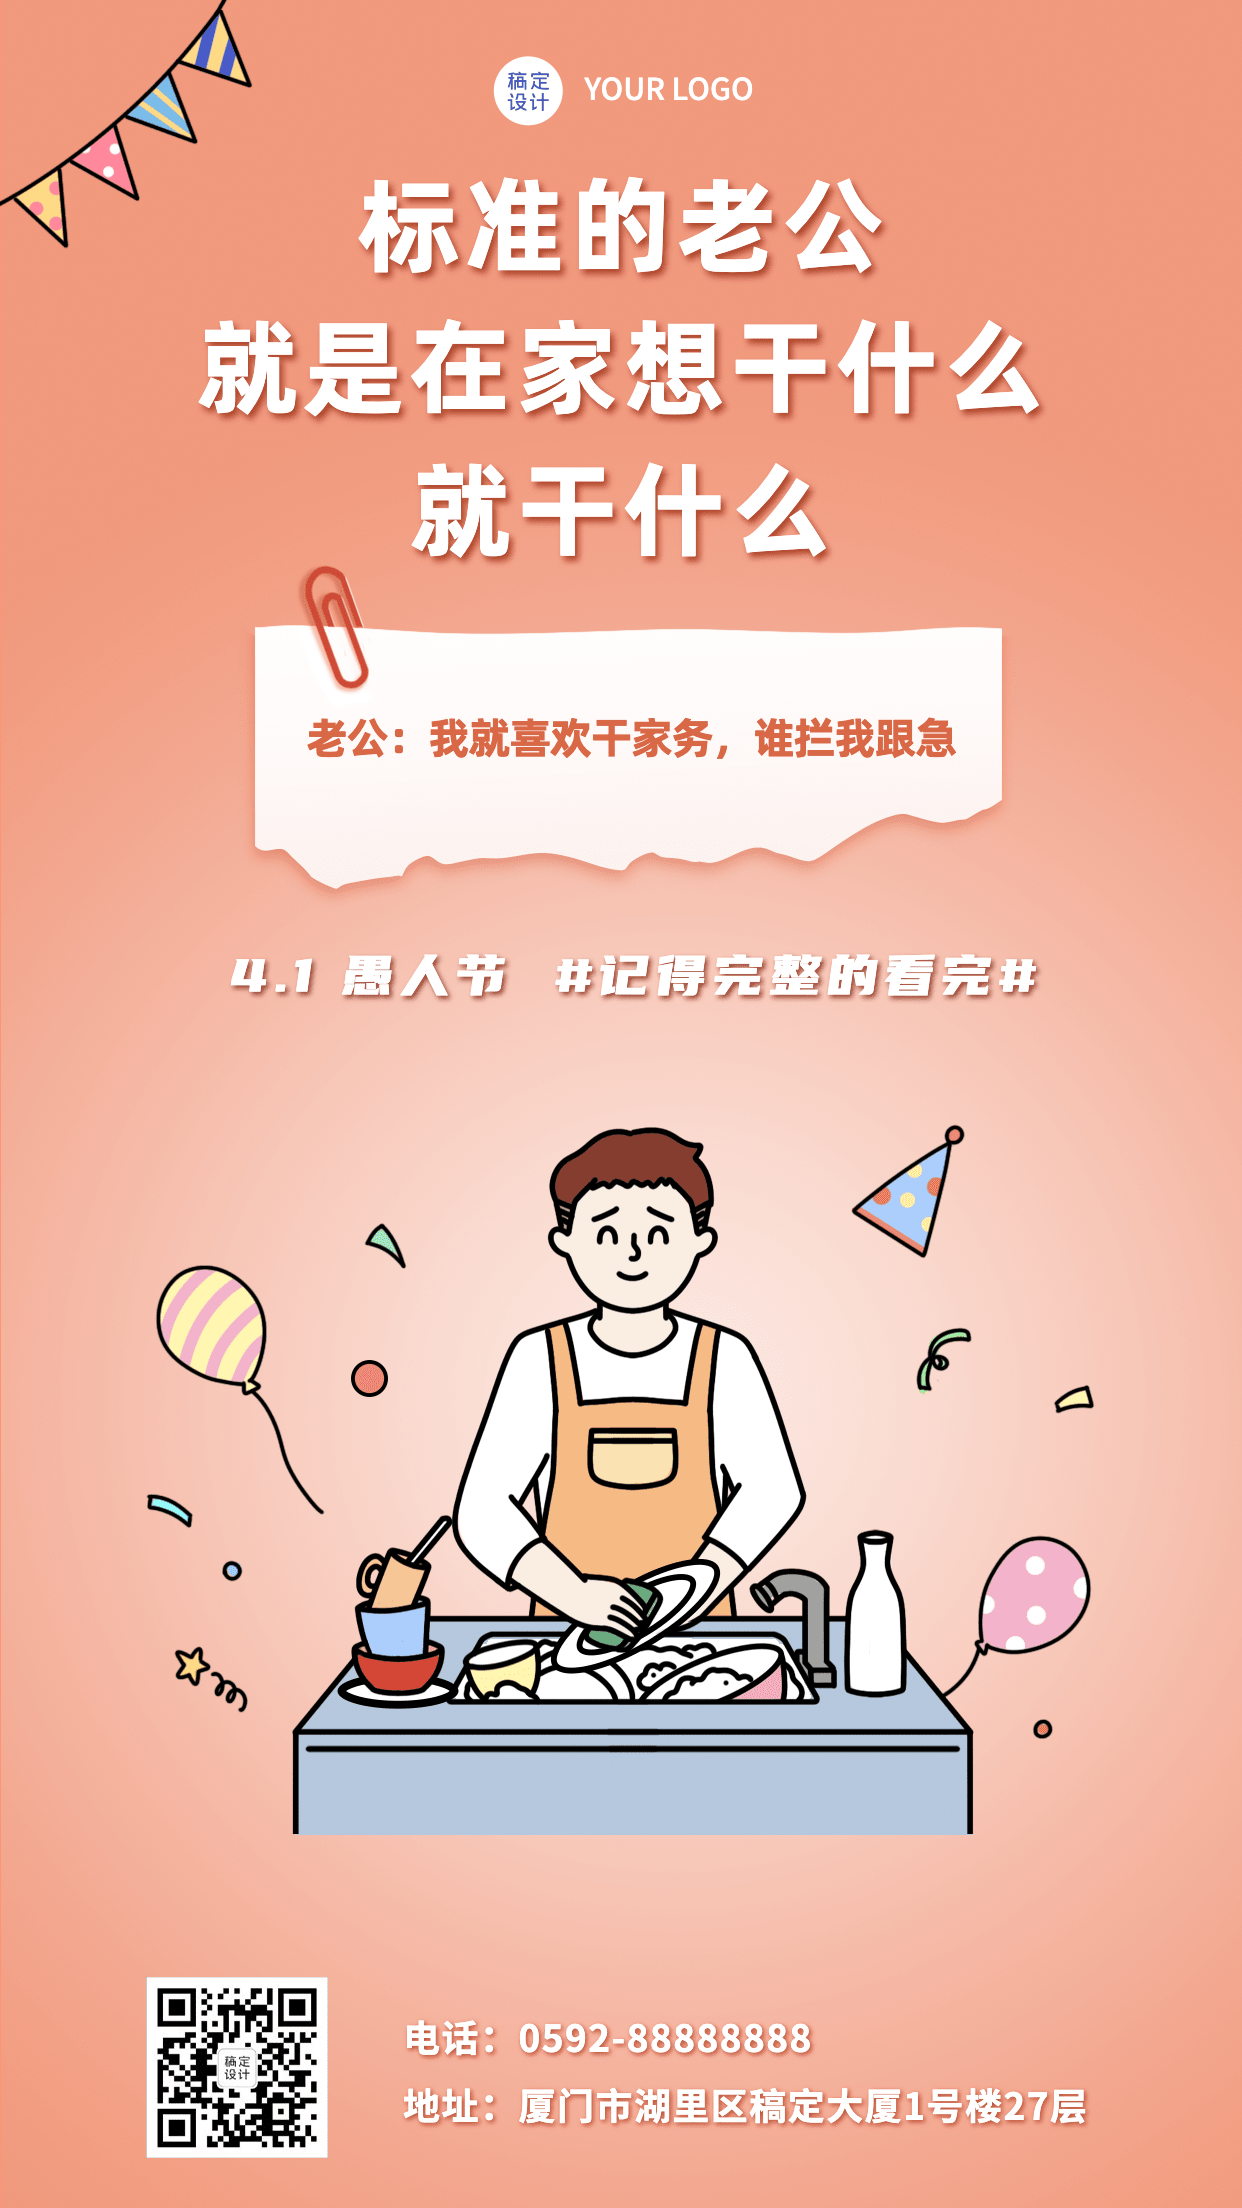 4.1愚人节节日祝福系列手机海报预览效果